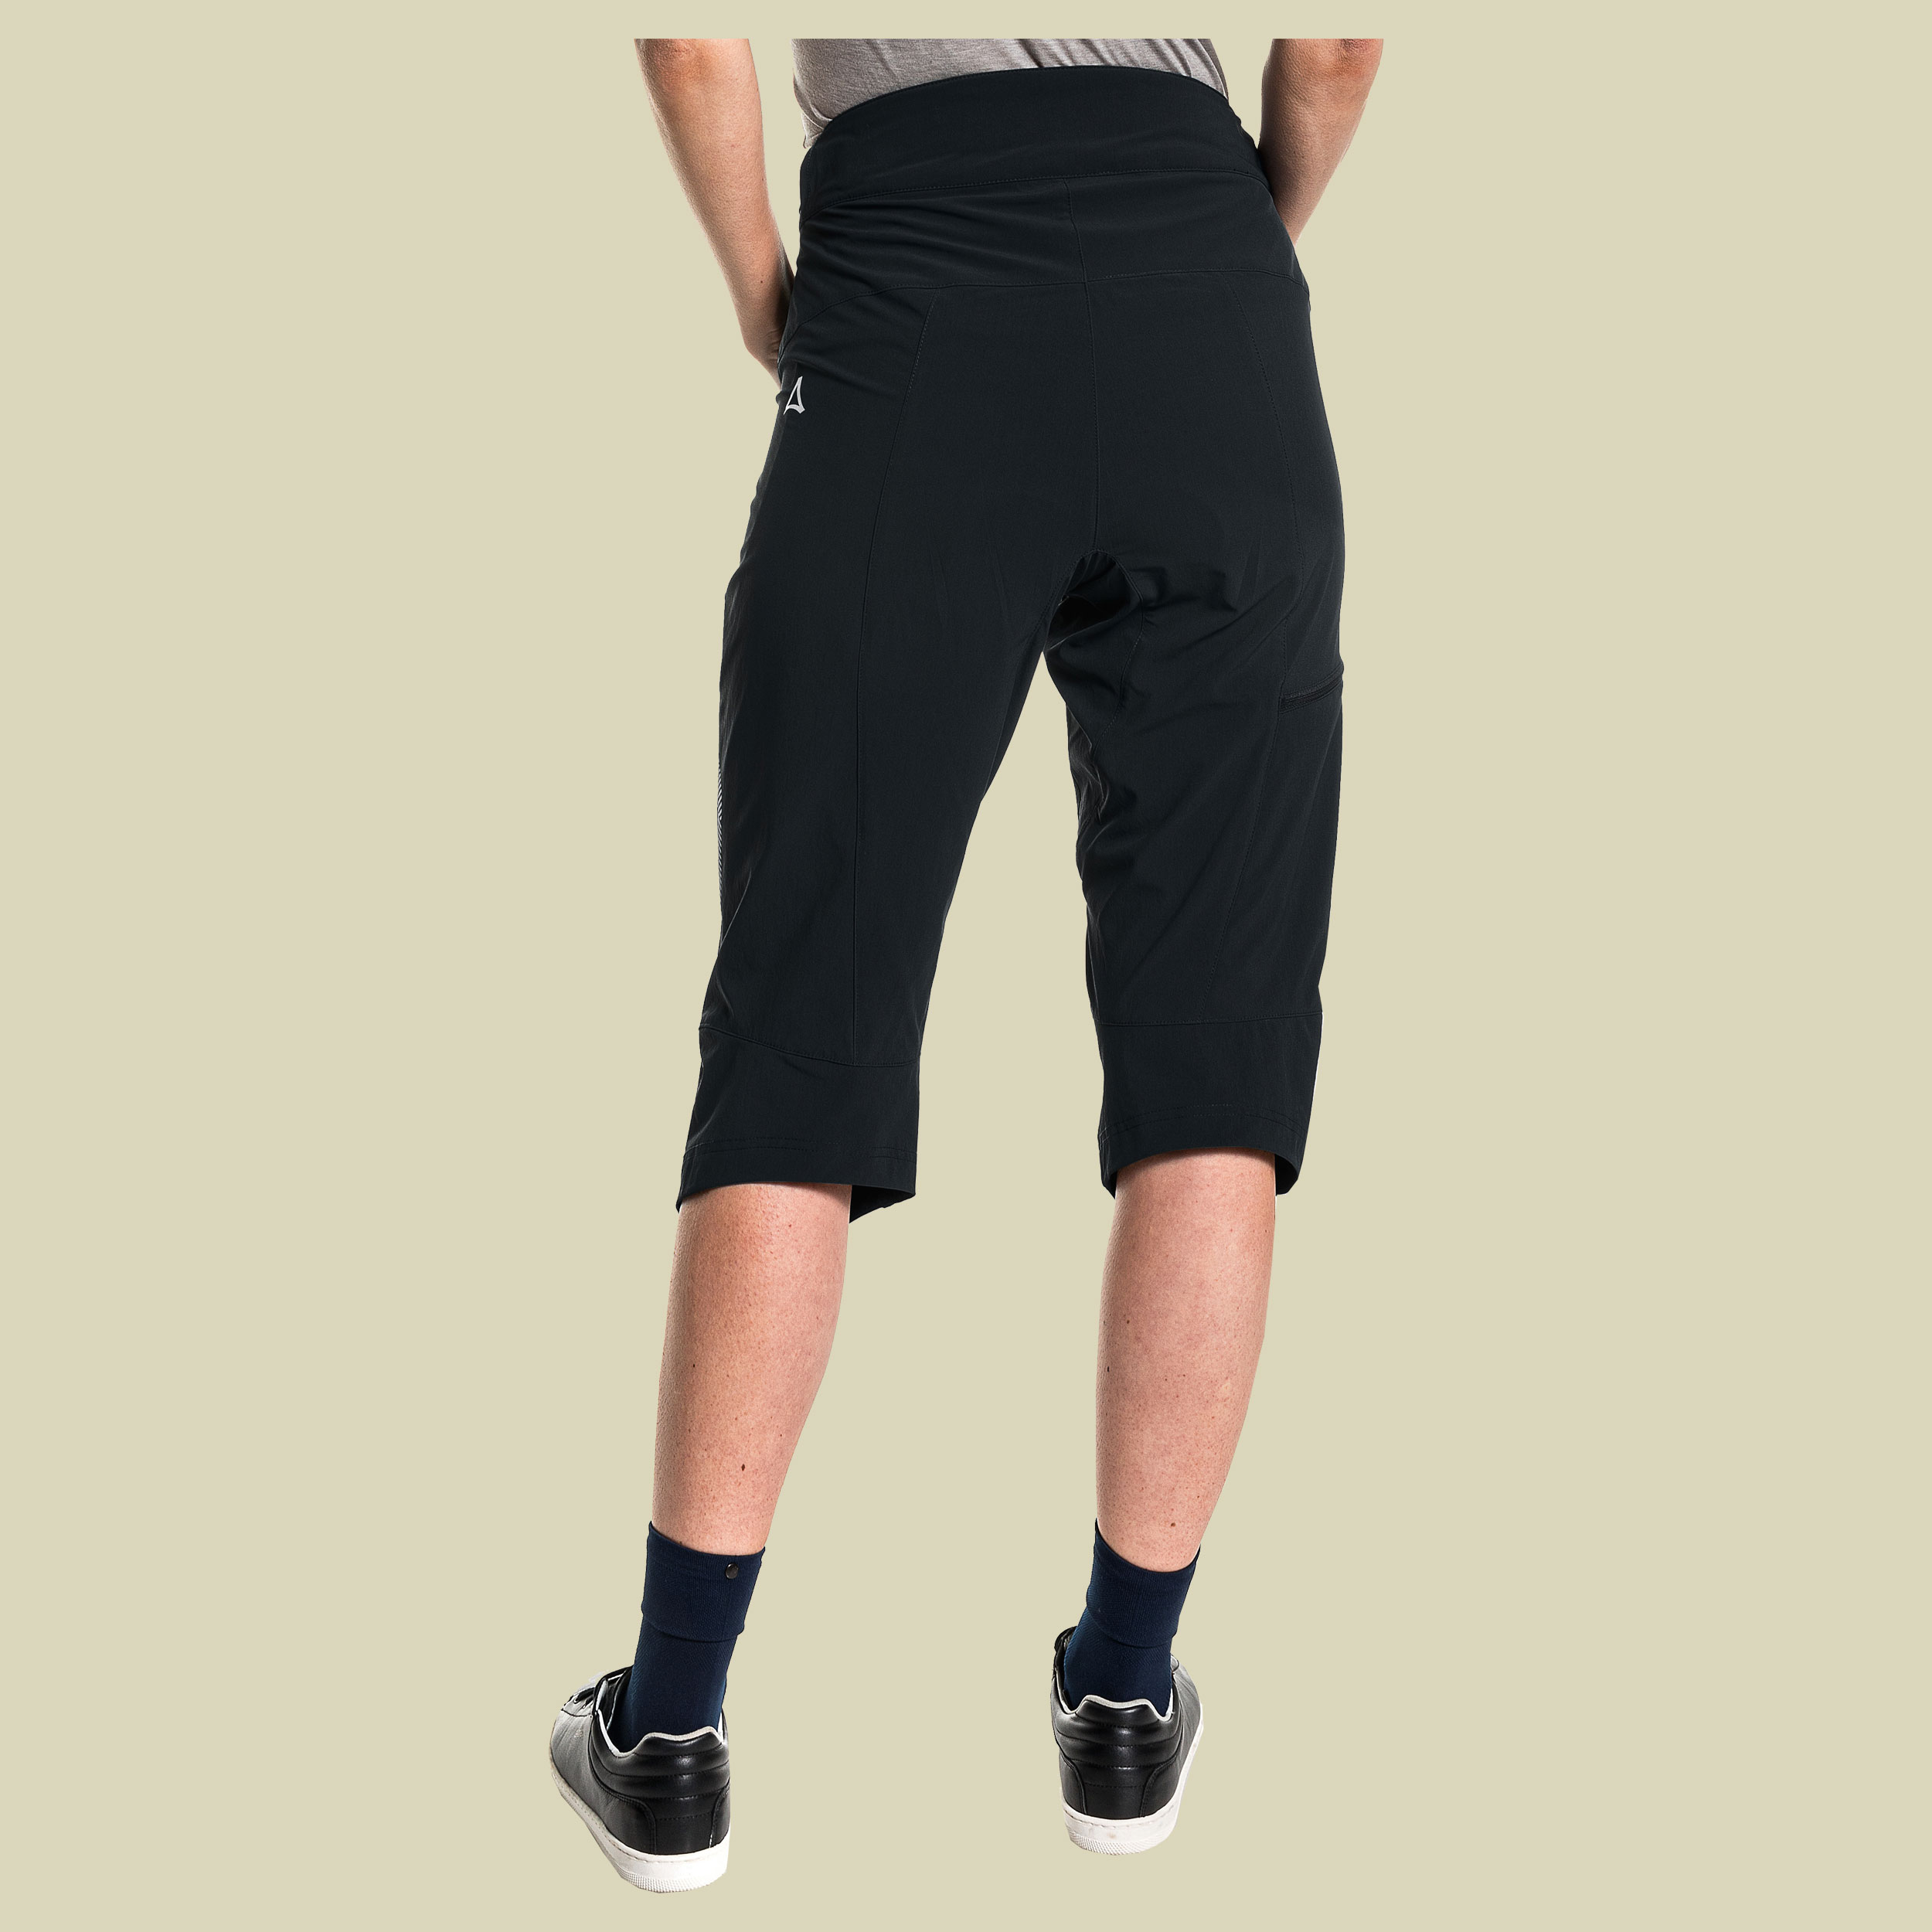 Moldavia Pants Women Größe 40 Farbe black